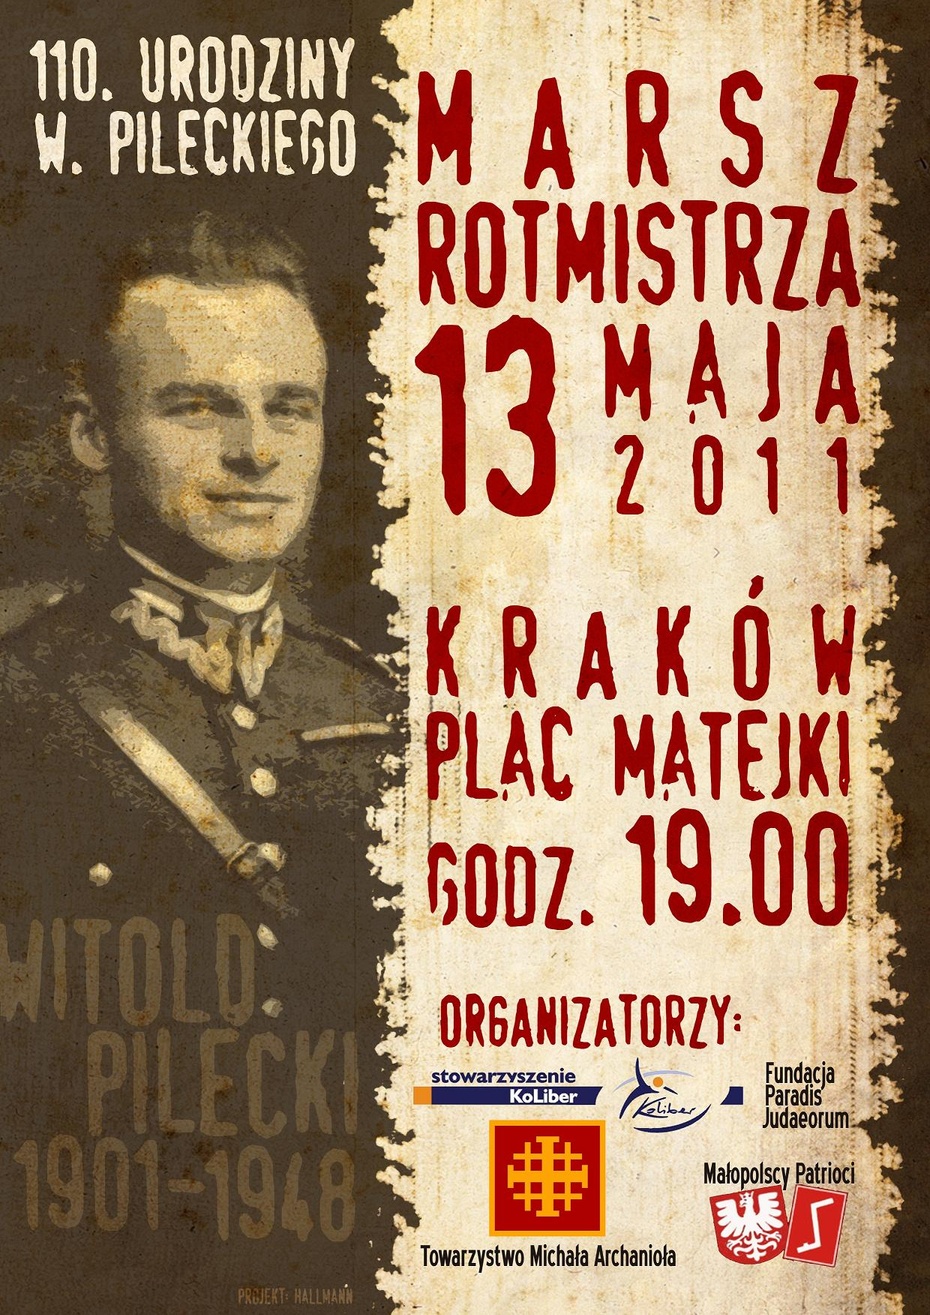 Plakat krakowskiego Marszu Rotmistrza 2011